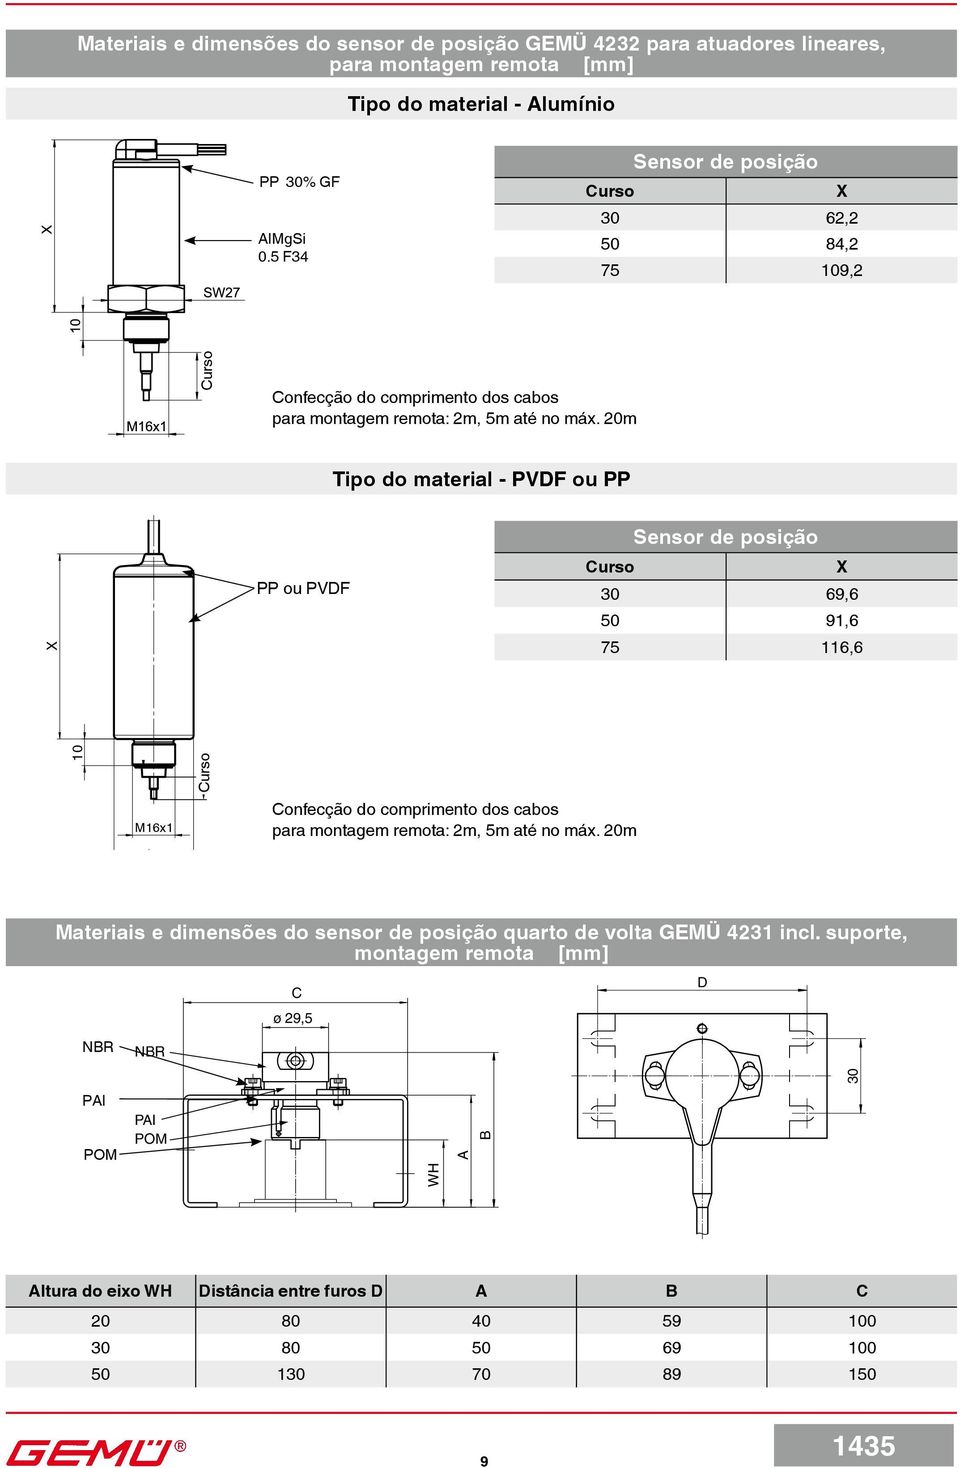 20m Tipo do material - PVDF ou PP X PP ou PVDF Sensor de posição Curso X 30 69,6 50 91,6 75 116,6 10 M16x1 Curso Confecção do comprimento dos cabos para montagem remota: 2m, 5m até